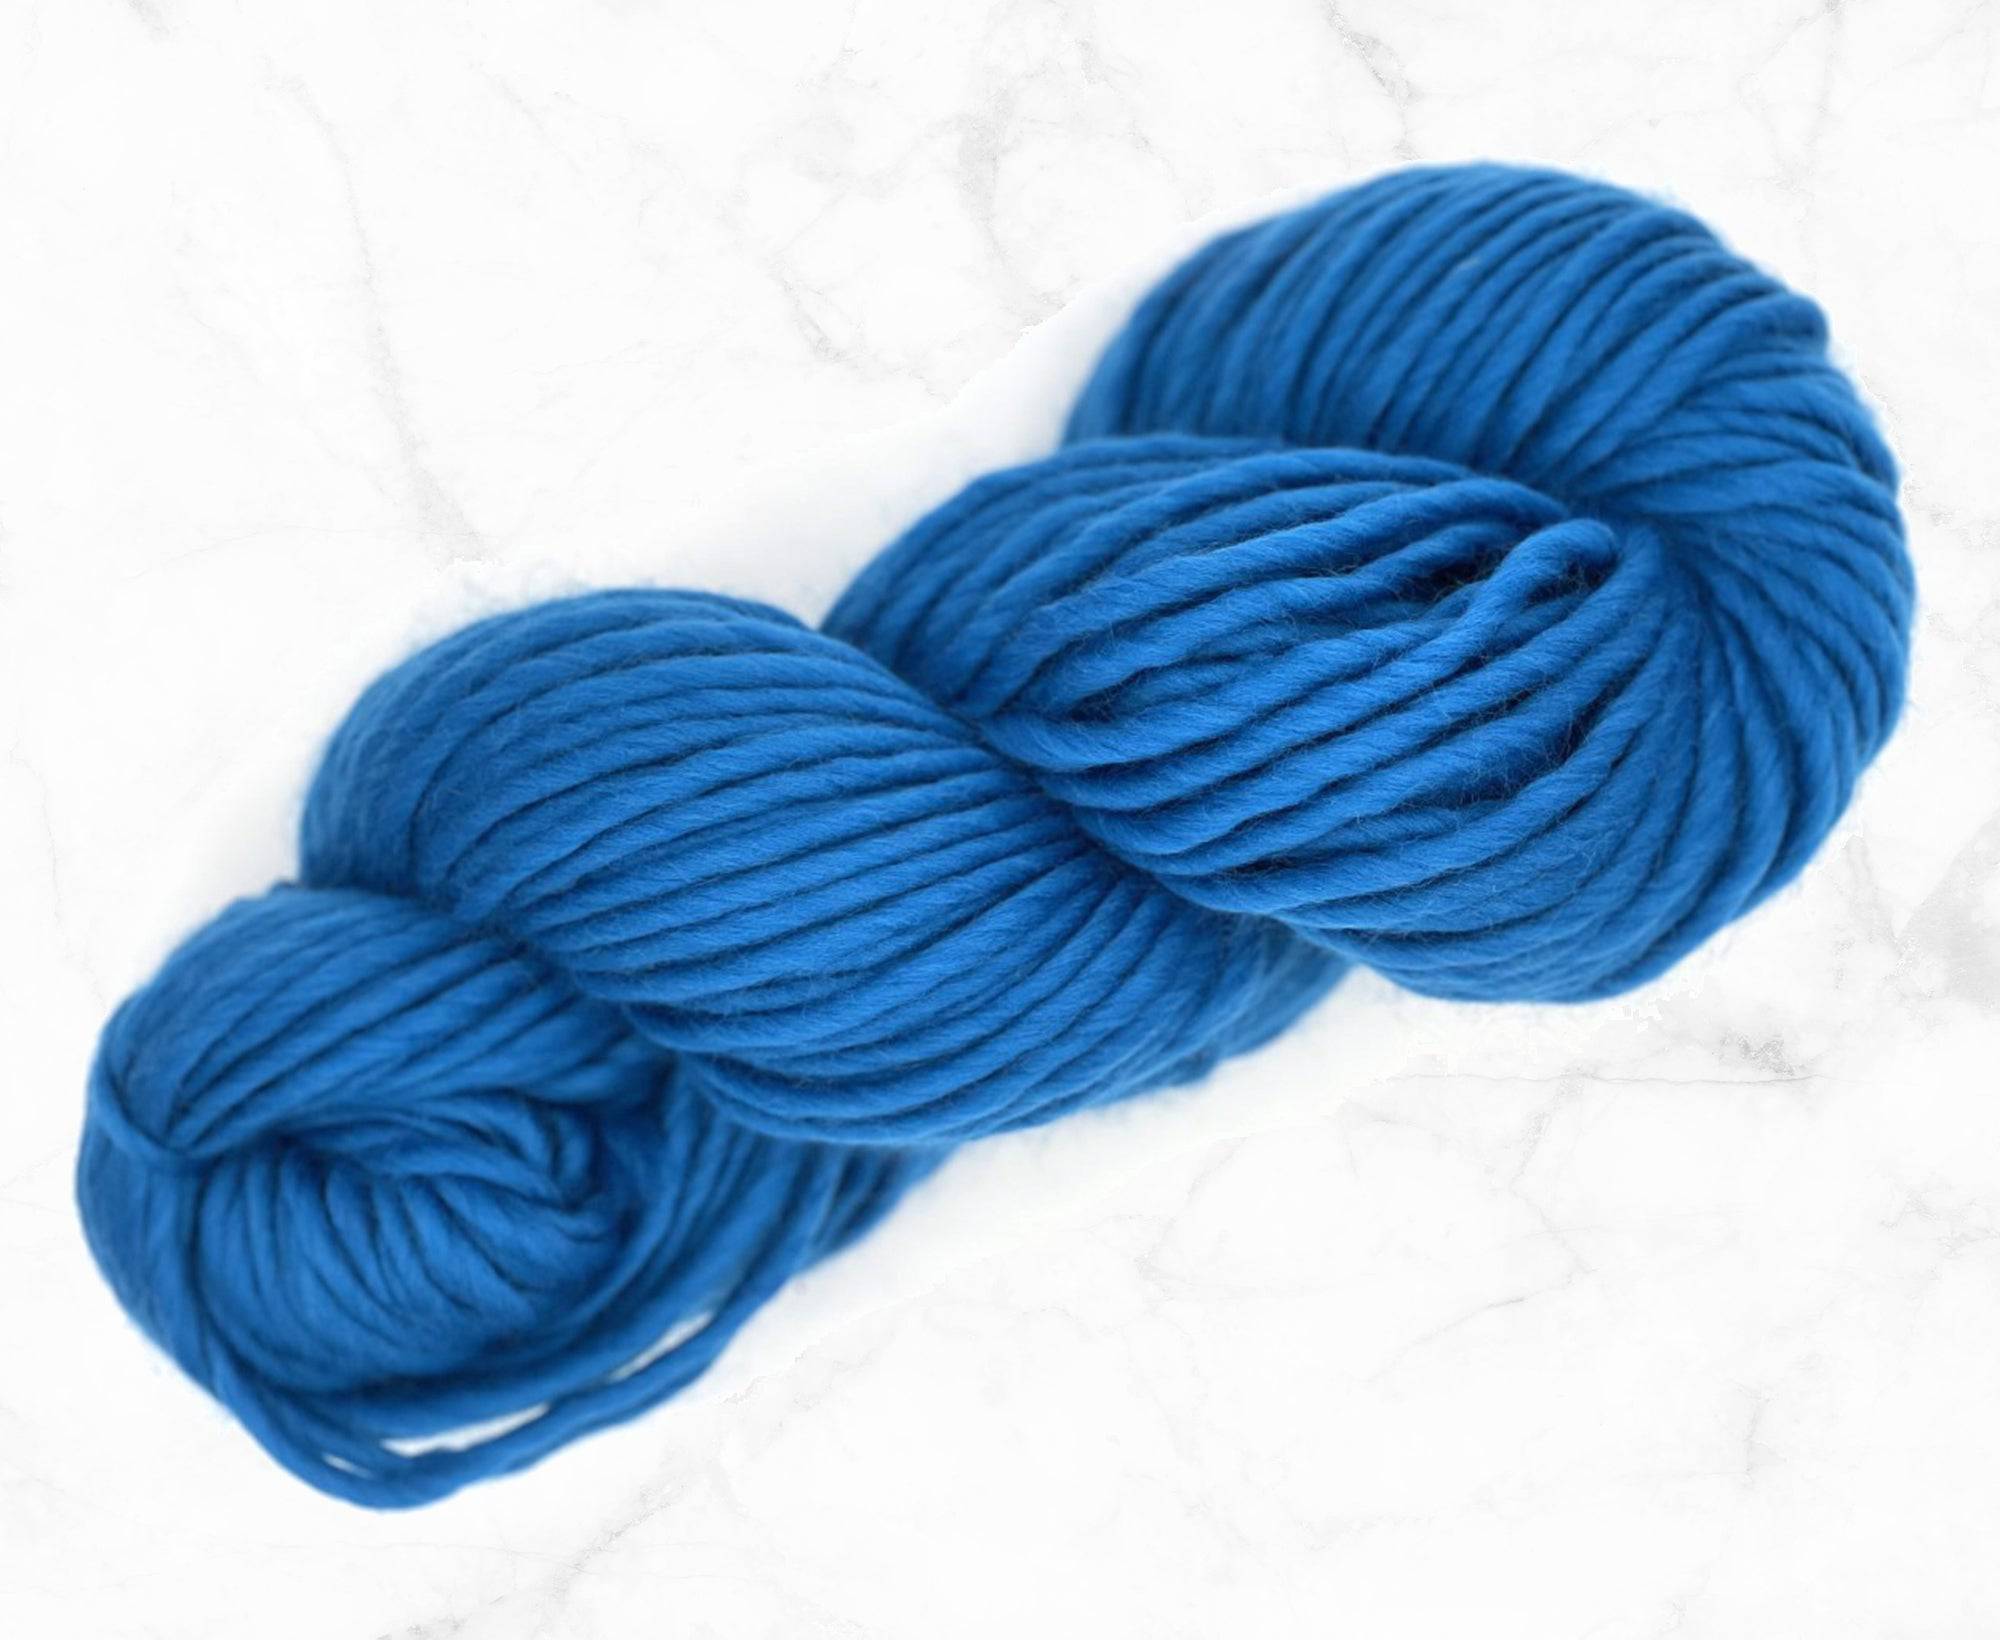 Aquamarine Merino Super Chunky Weight - World of Wool